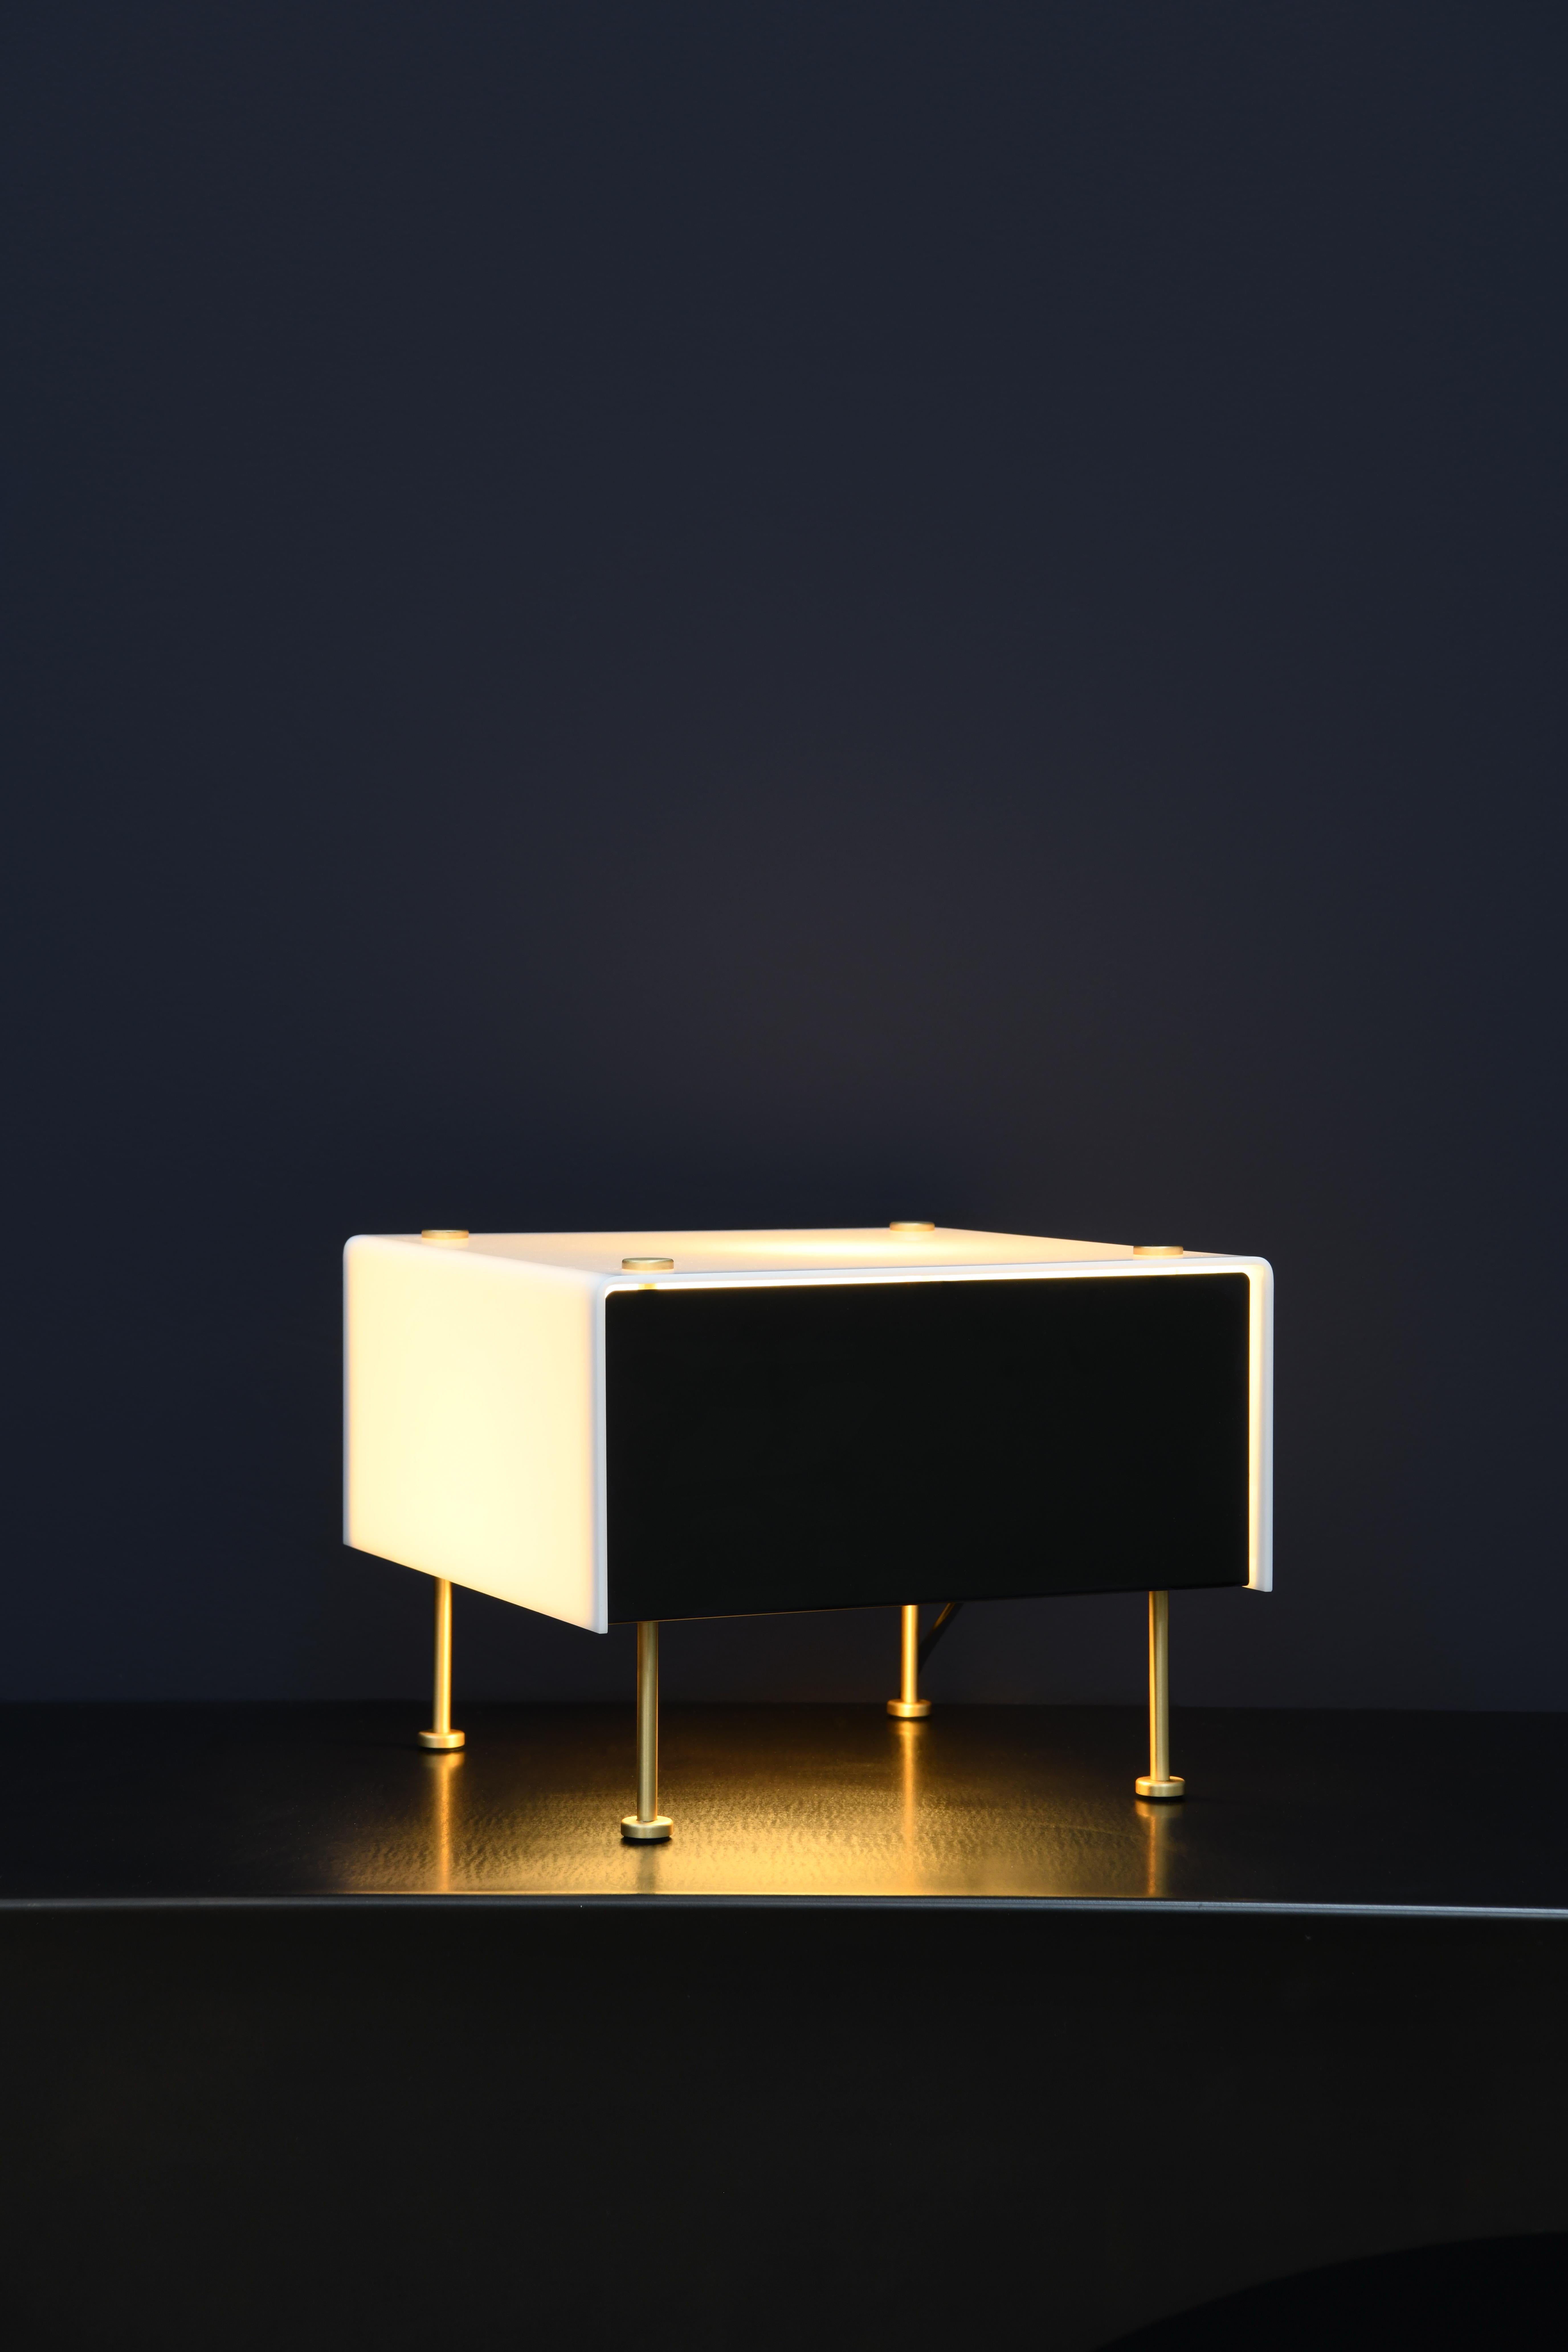 Grande lampe de table 'G60' de Pierre Guariche pour Sammode Studio. 

Conçu à l'origine par Pierre Guariche, ce luminaire emblématique a fait l'objet d'une réédition autorisée par Sammode Studio en France. Il reprend les mêmes techniques de